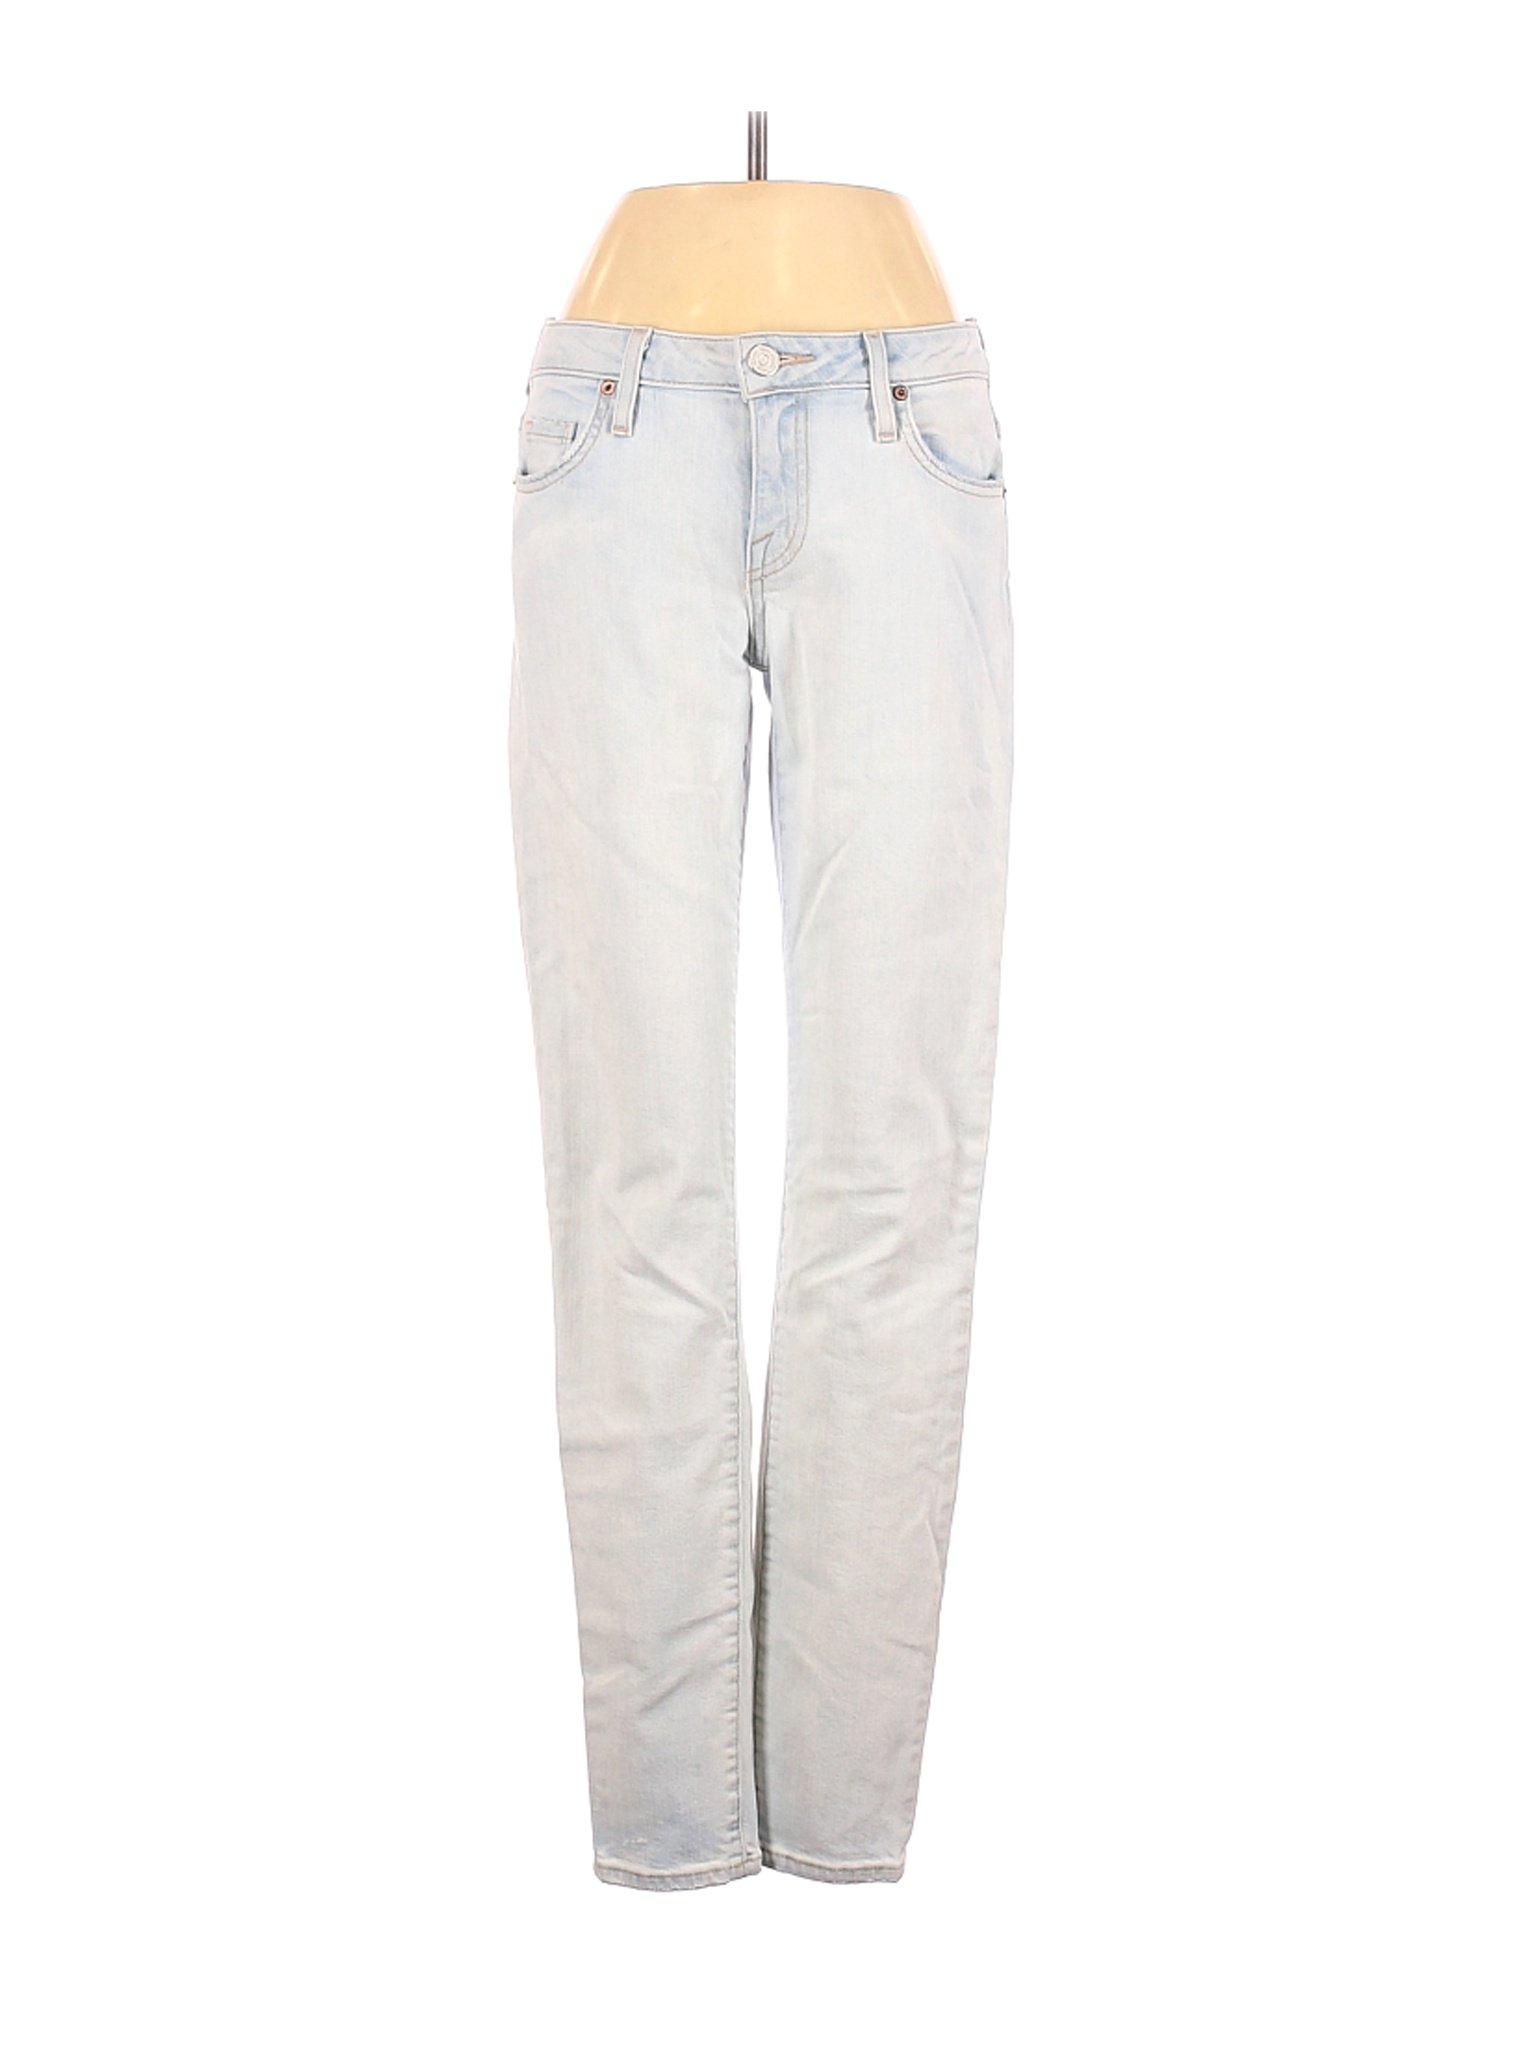 Joie Women White Jeans 25W | eBay